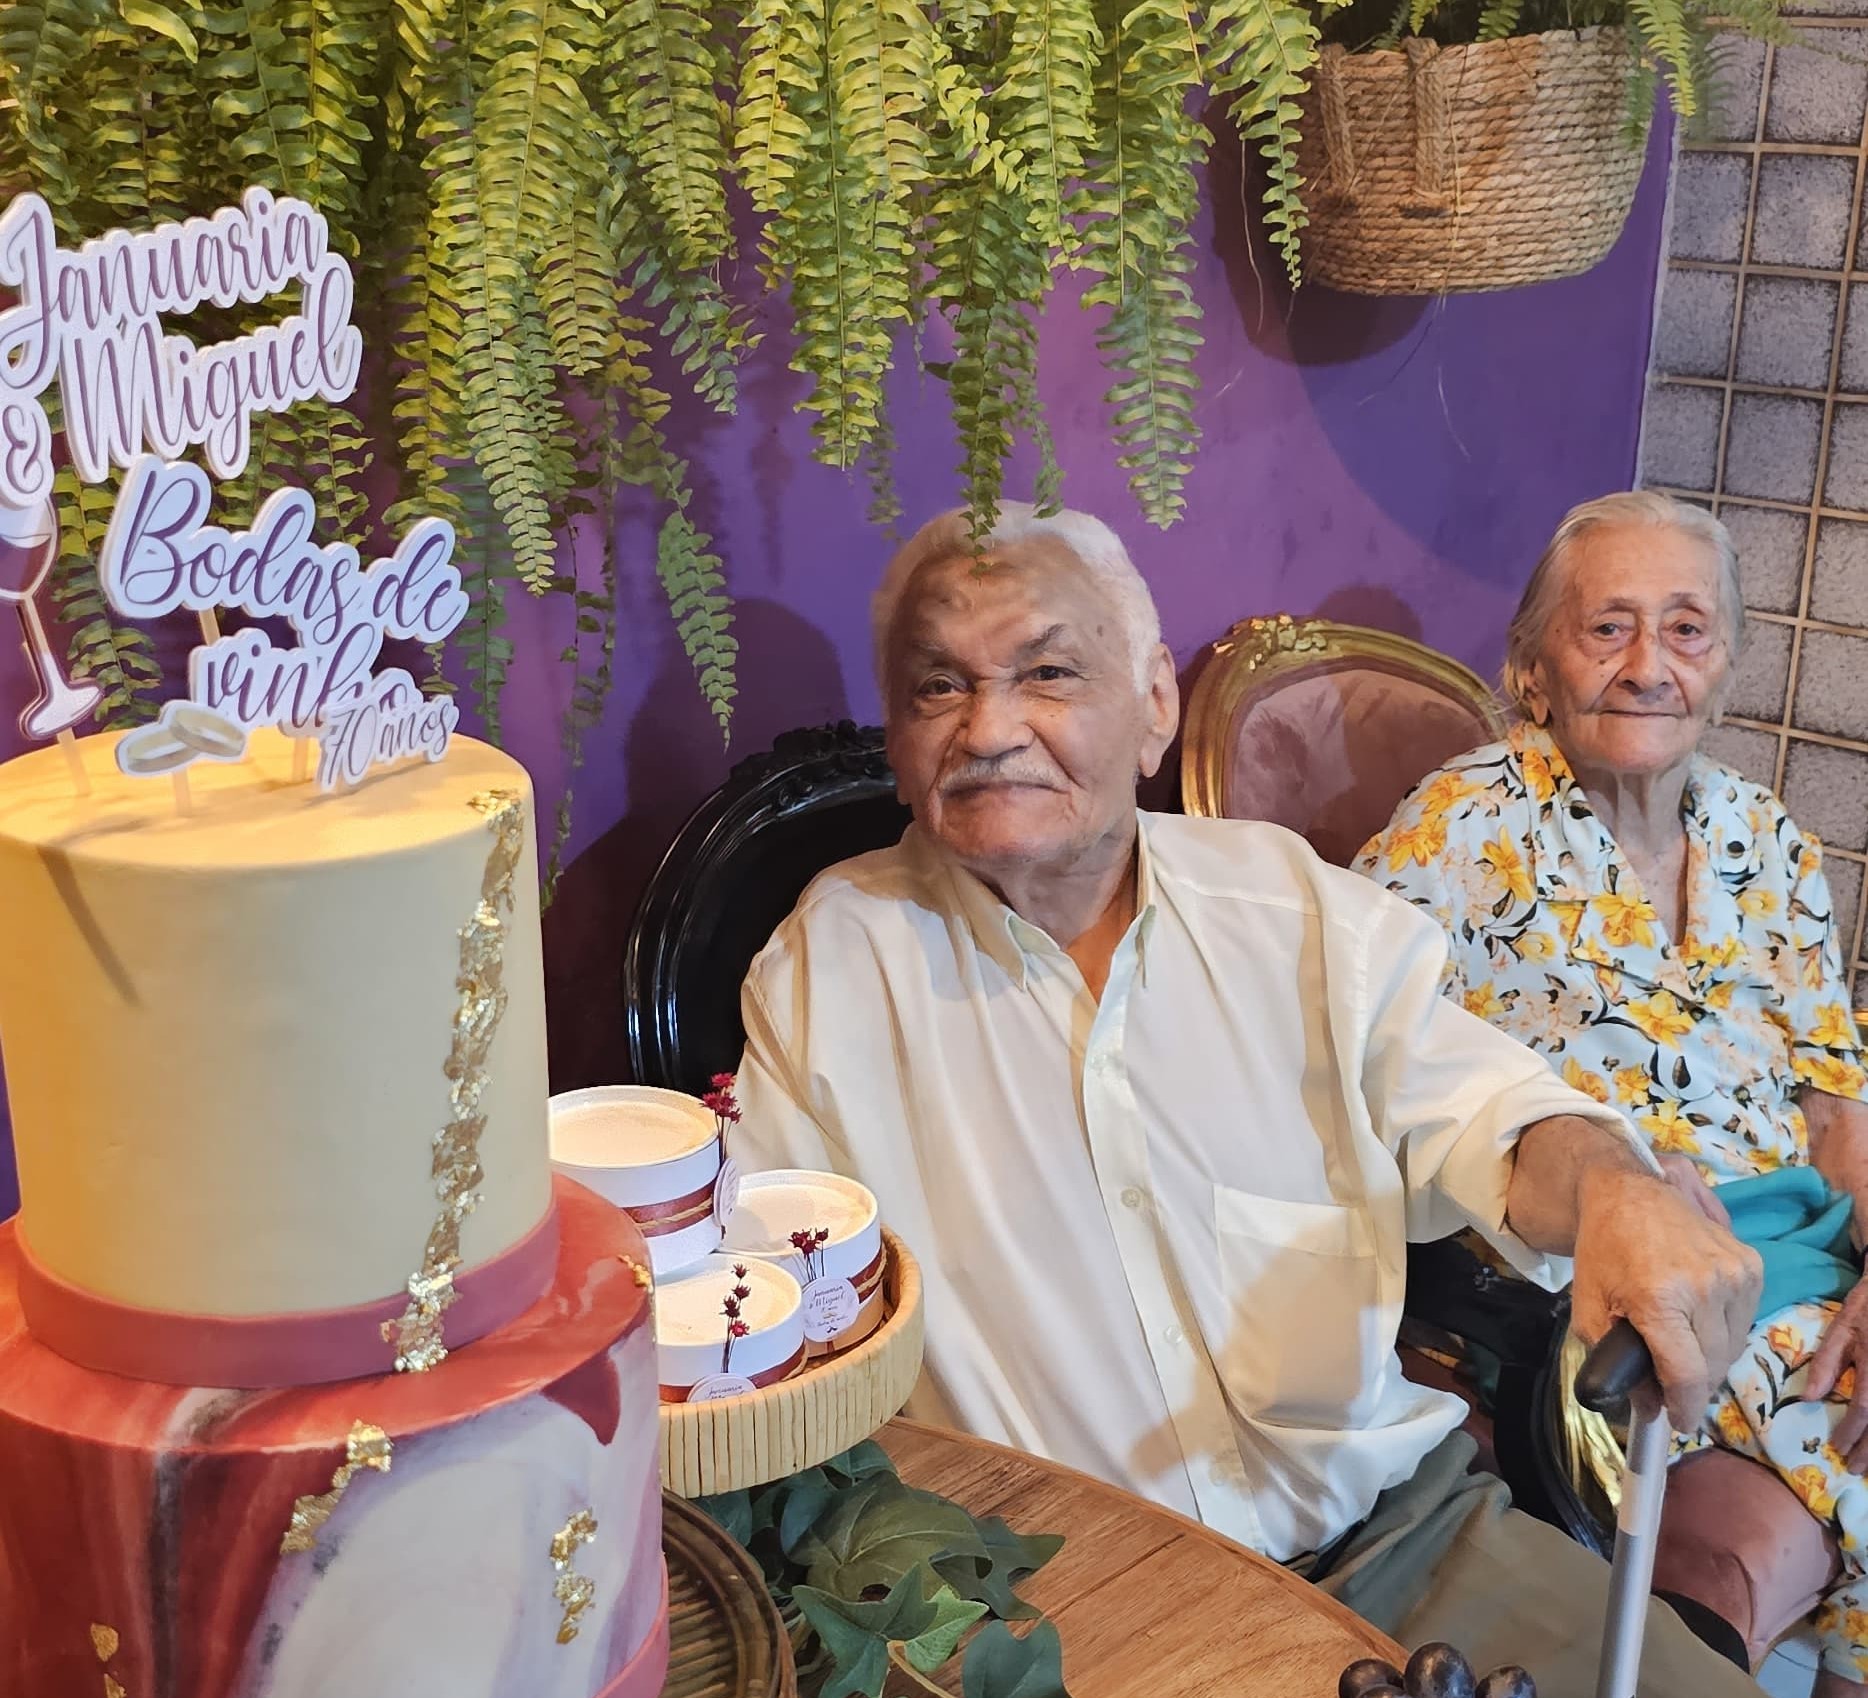 Serra-talhadenses comemoram 70 anos de casados e dão a receita